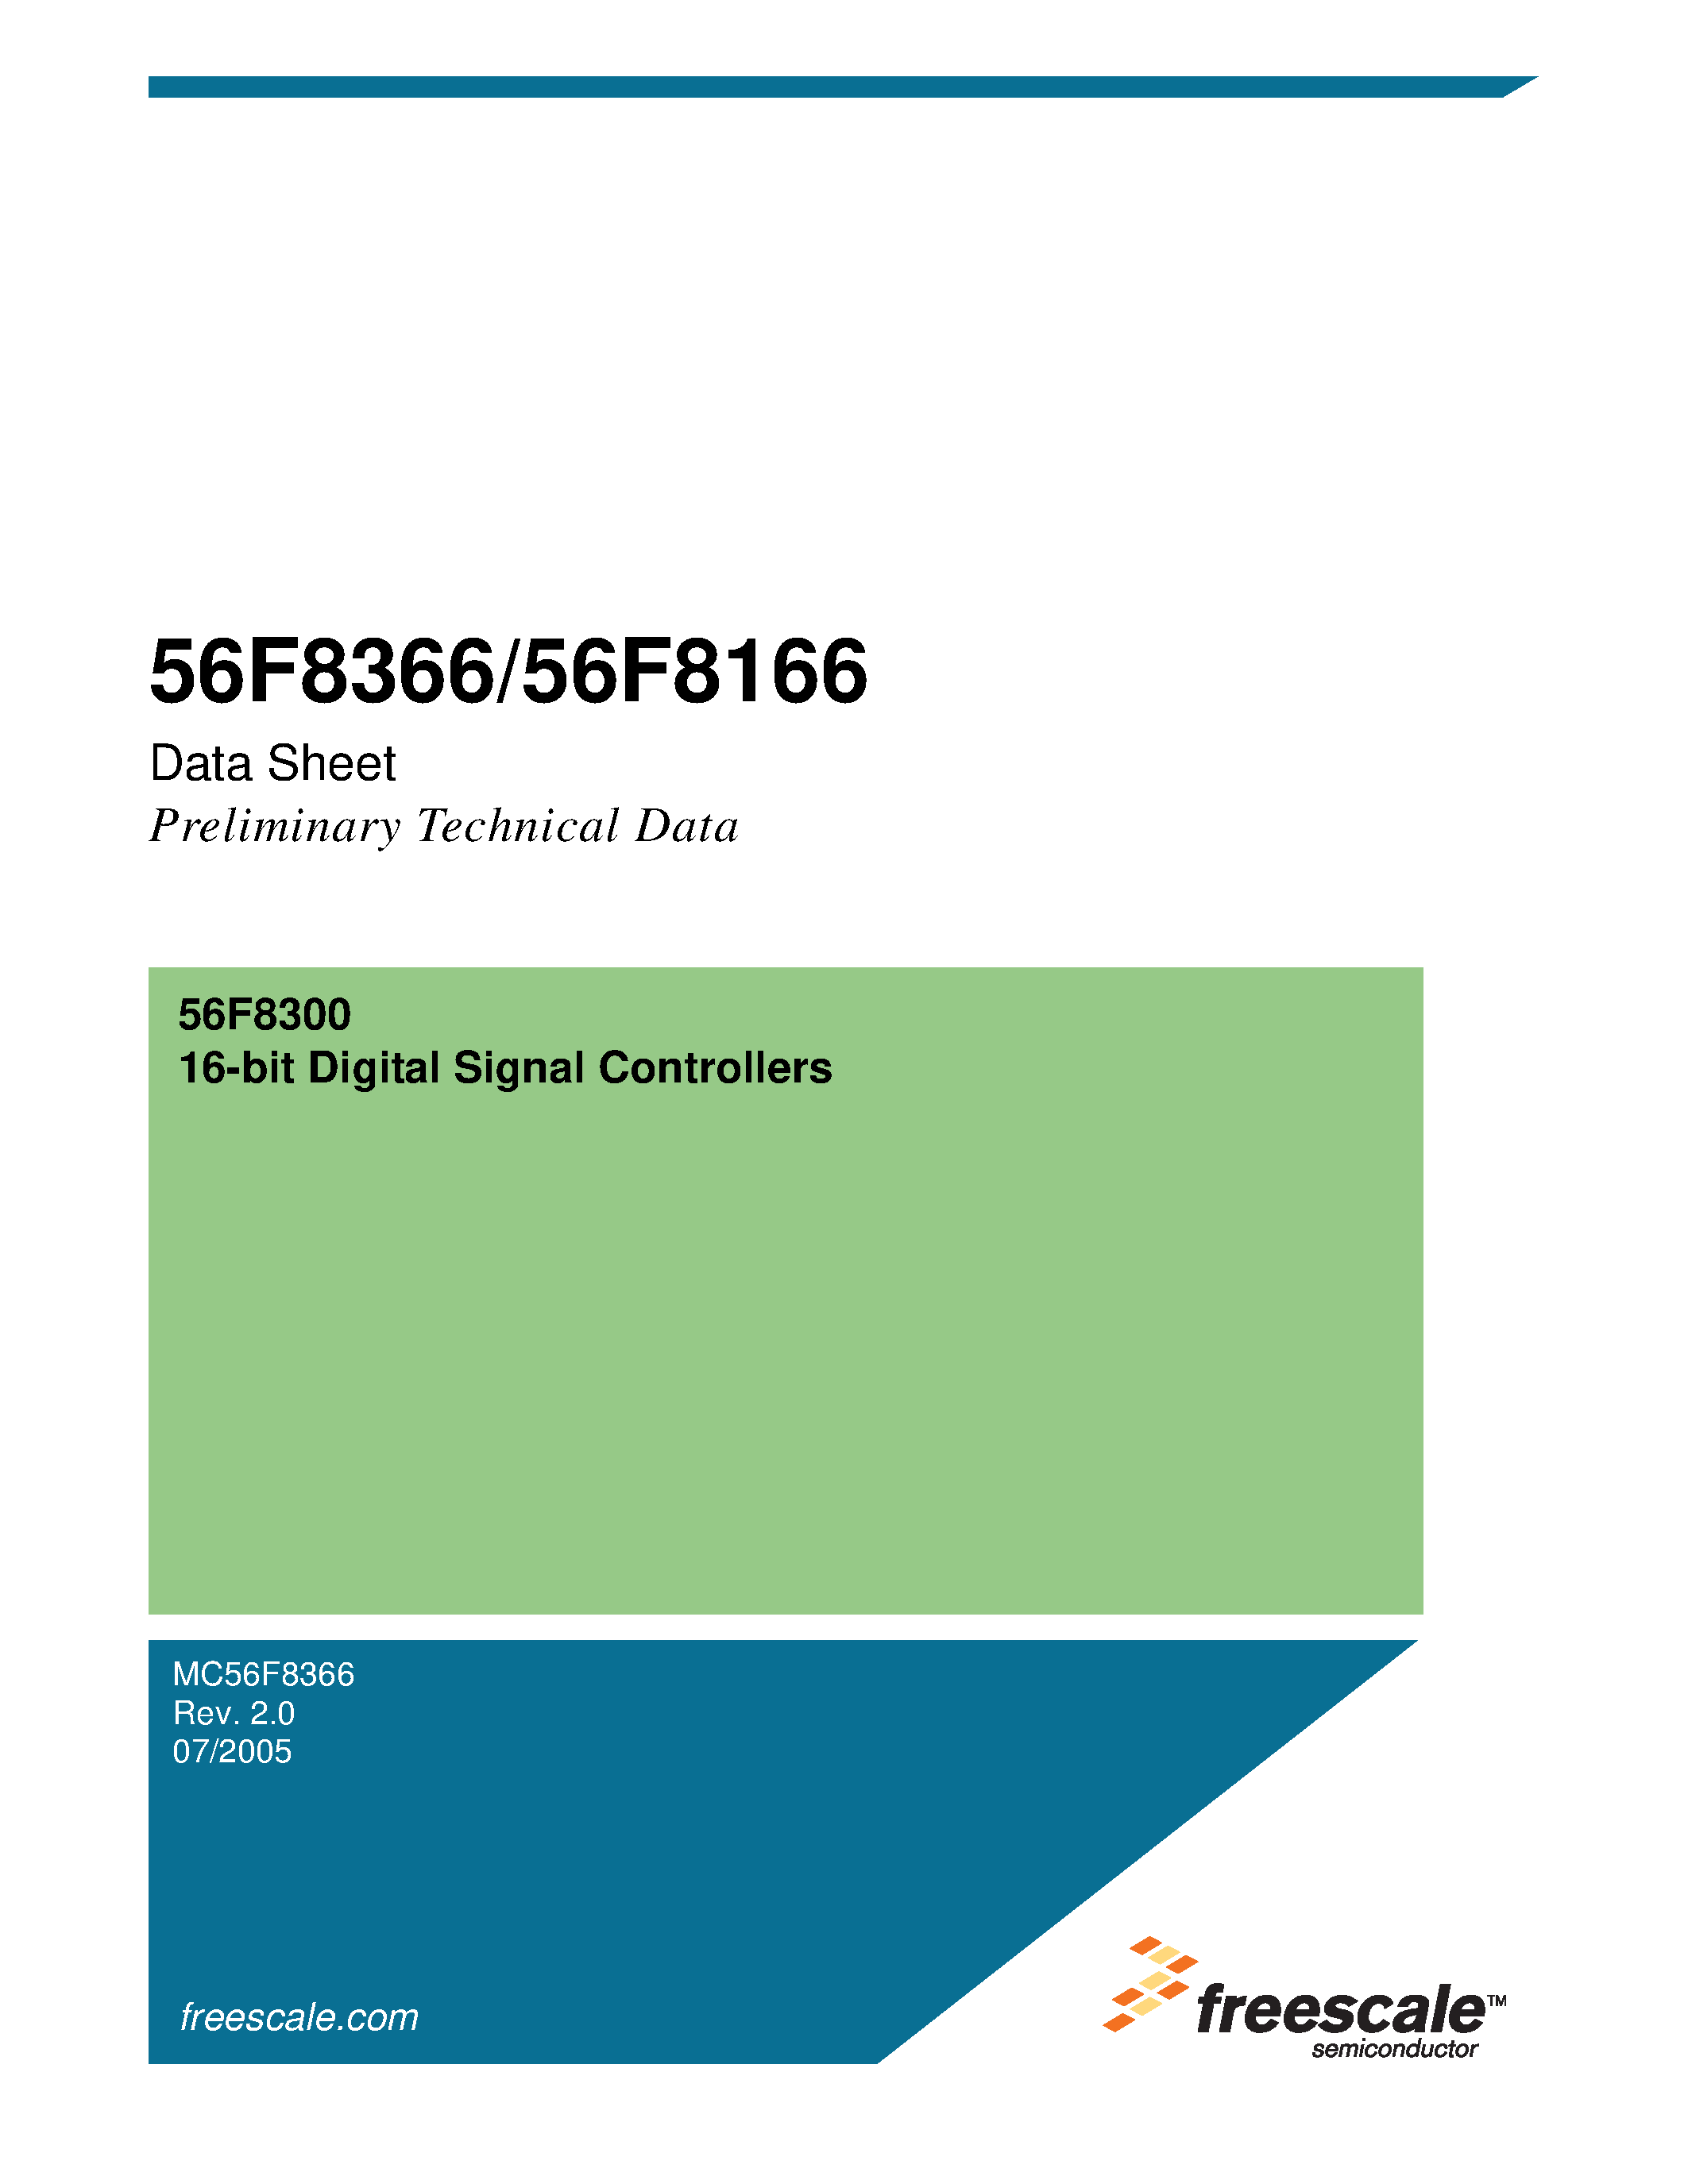 Datasheet MC56F8166 - (MC56F8166 / MC56F8366) 16-bit Digital Signal Controllers page 1